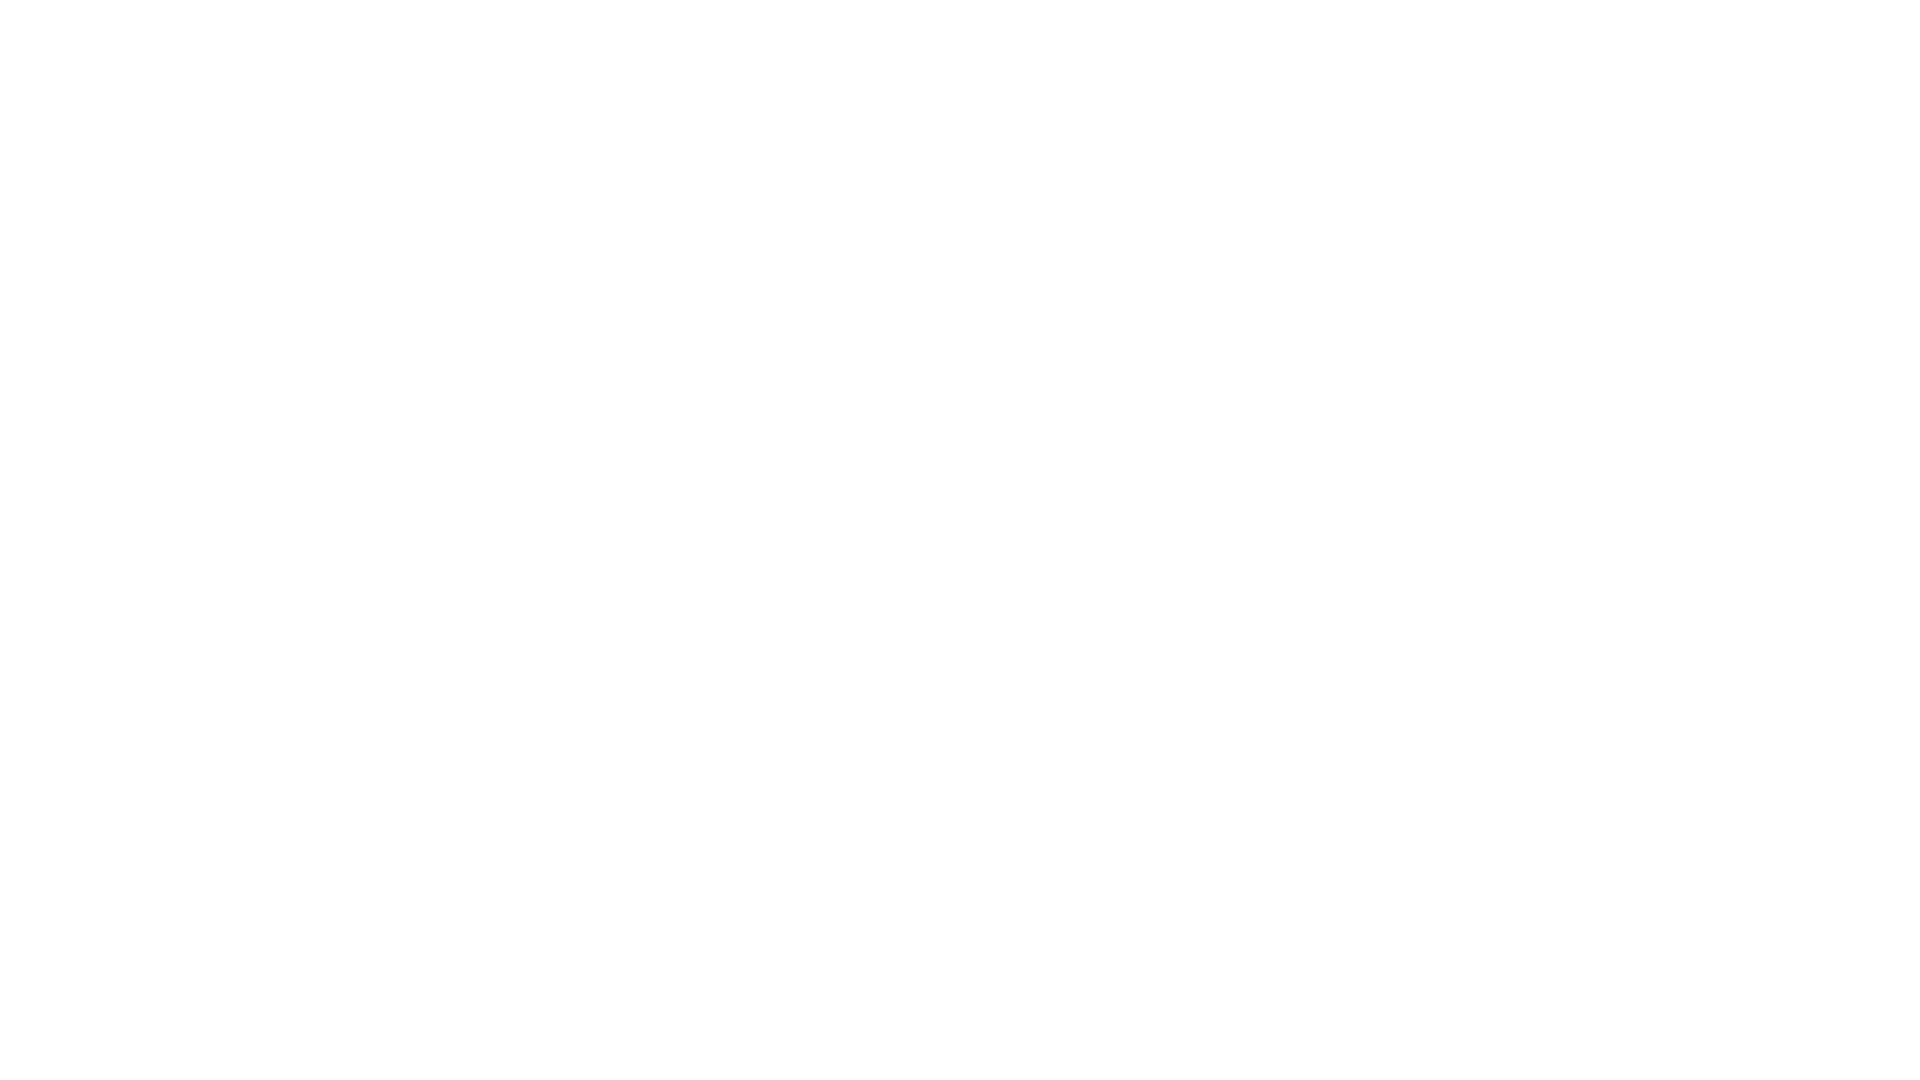 Studio Leroy